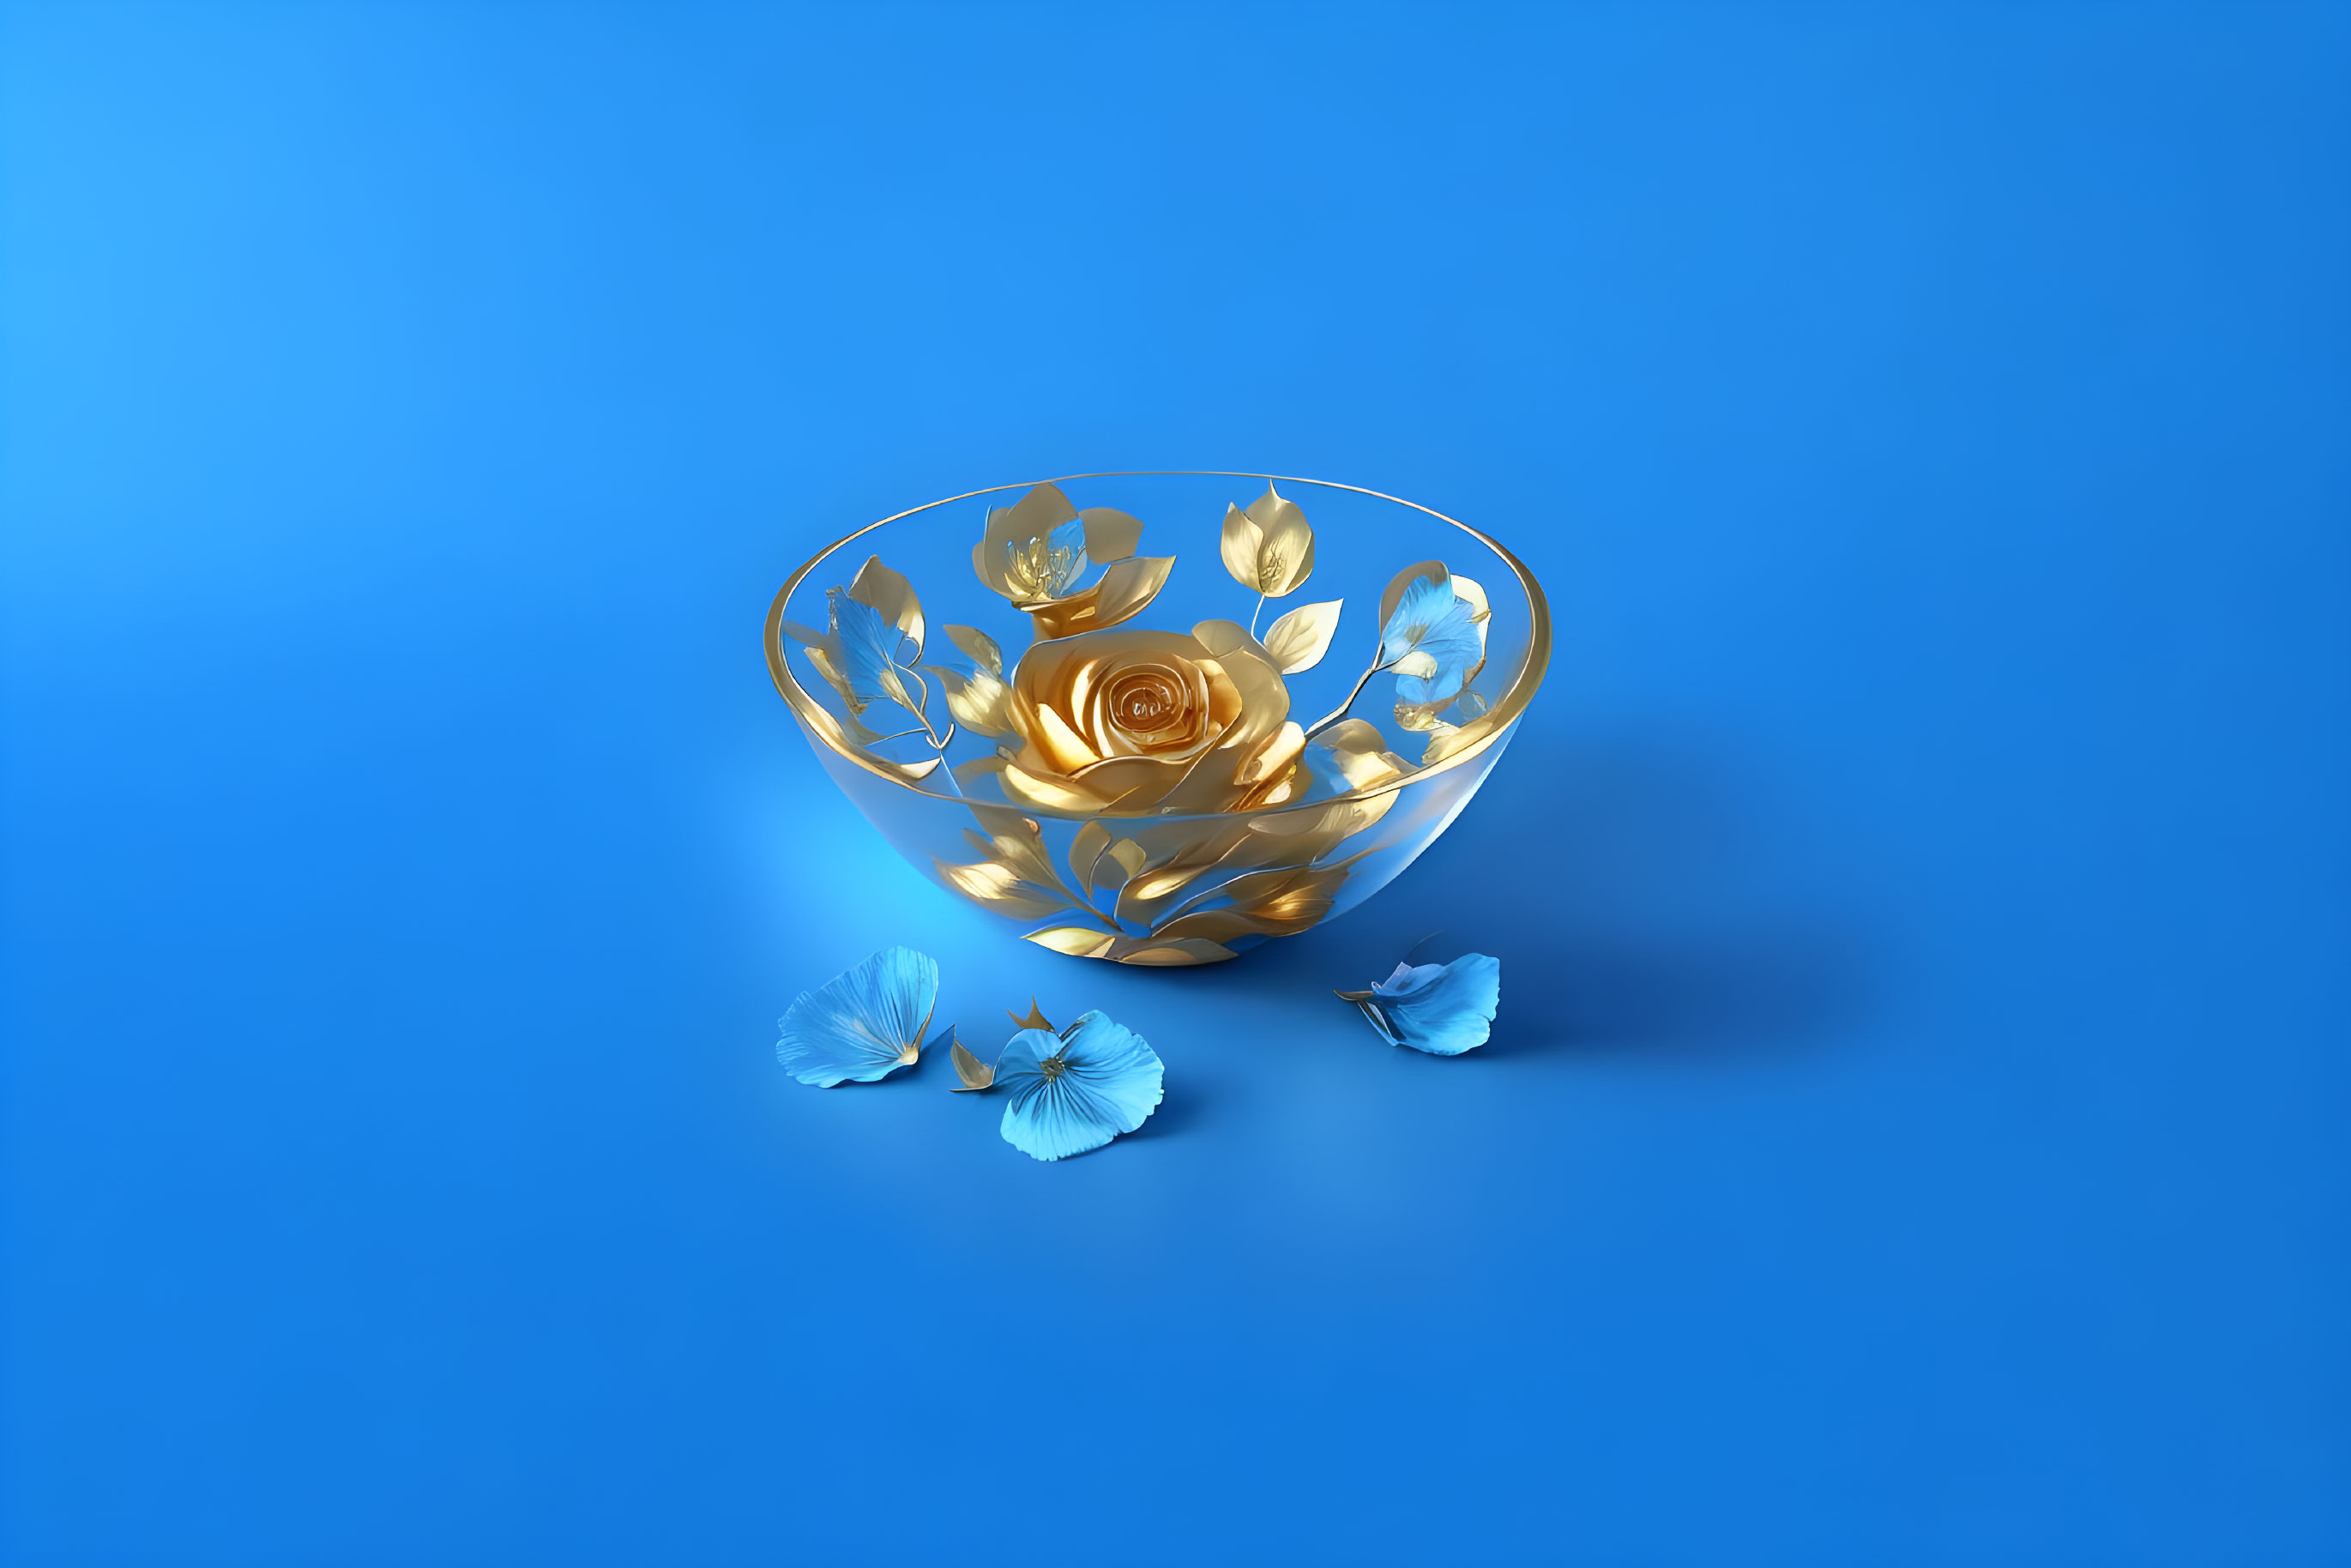 Golden Blossom Bowl and Blue Petals